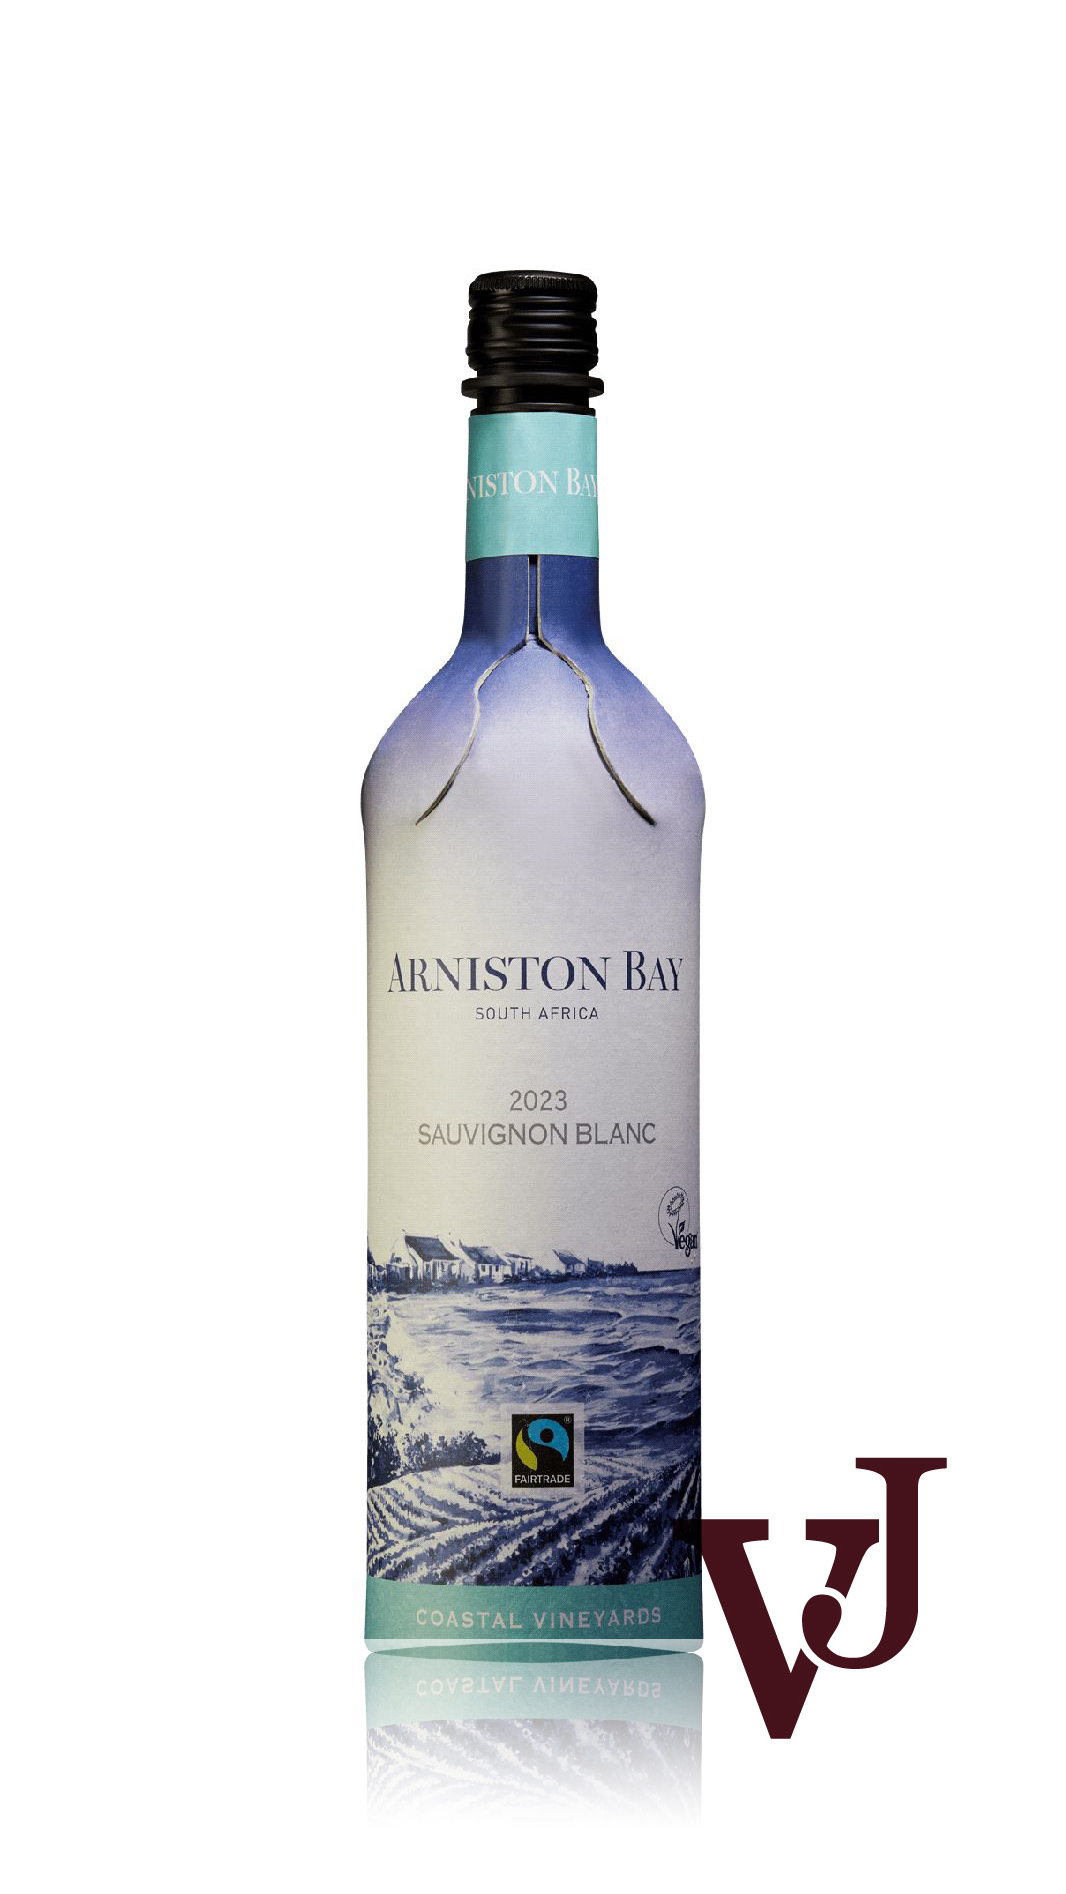 Vitt Vin - Arniston Bay Sauvignon Blanc 2023 artikel nummer 213901 från producenten Stellenbosch Vineyards från området Sydafrika